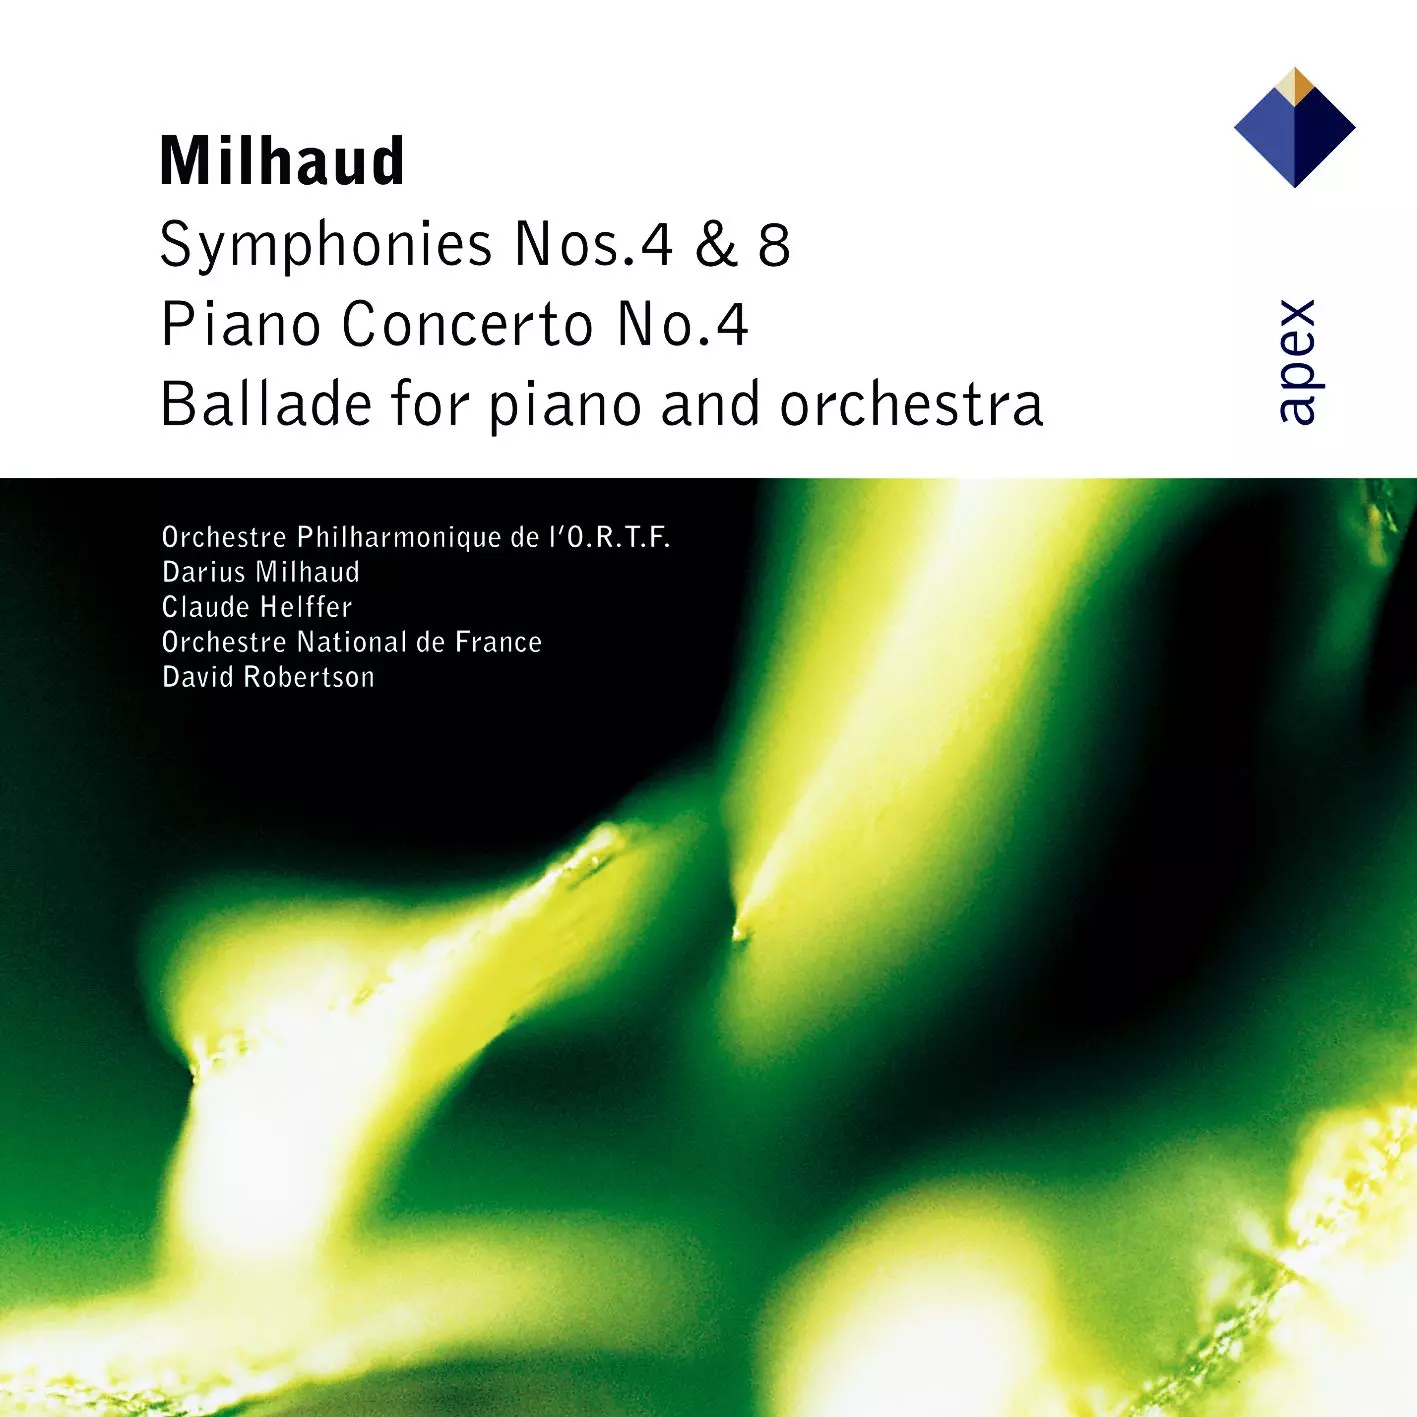 Milhaud: Symphonies Nos 4 & 8 & Piano Concerto No.4